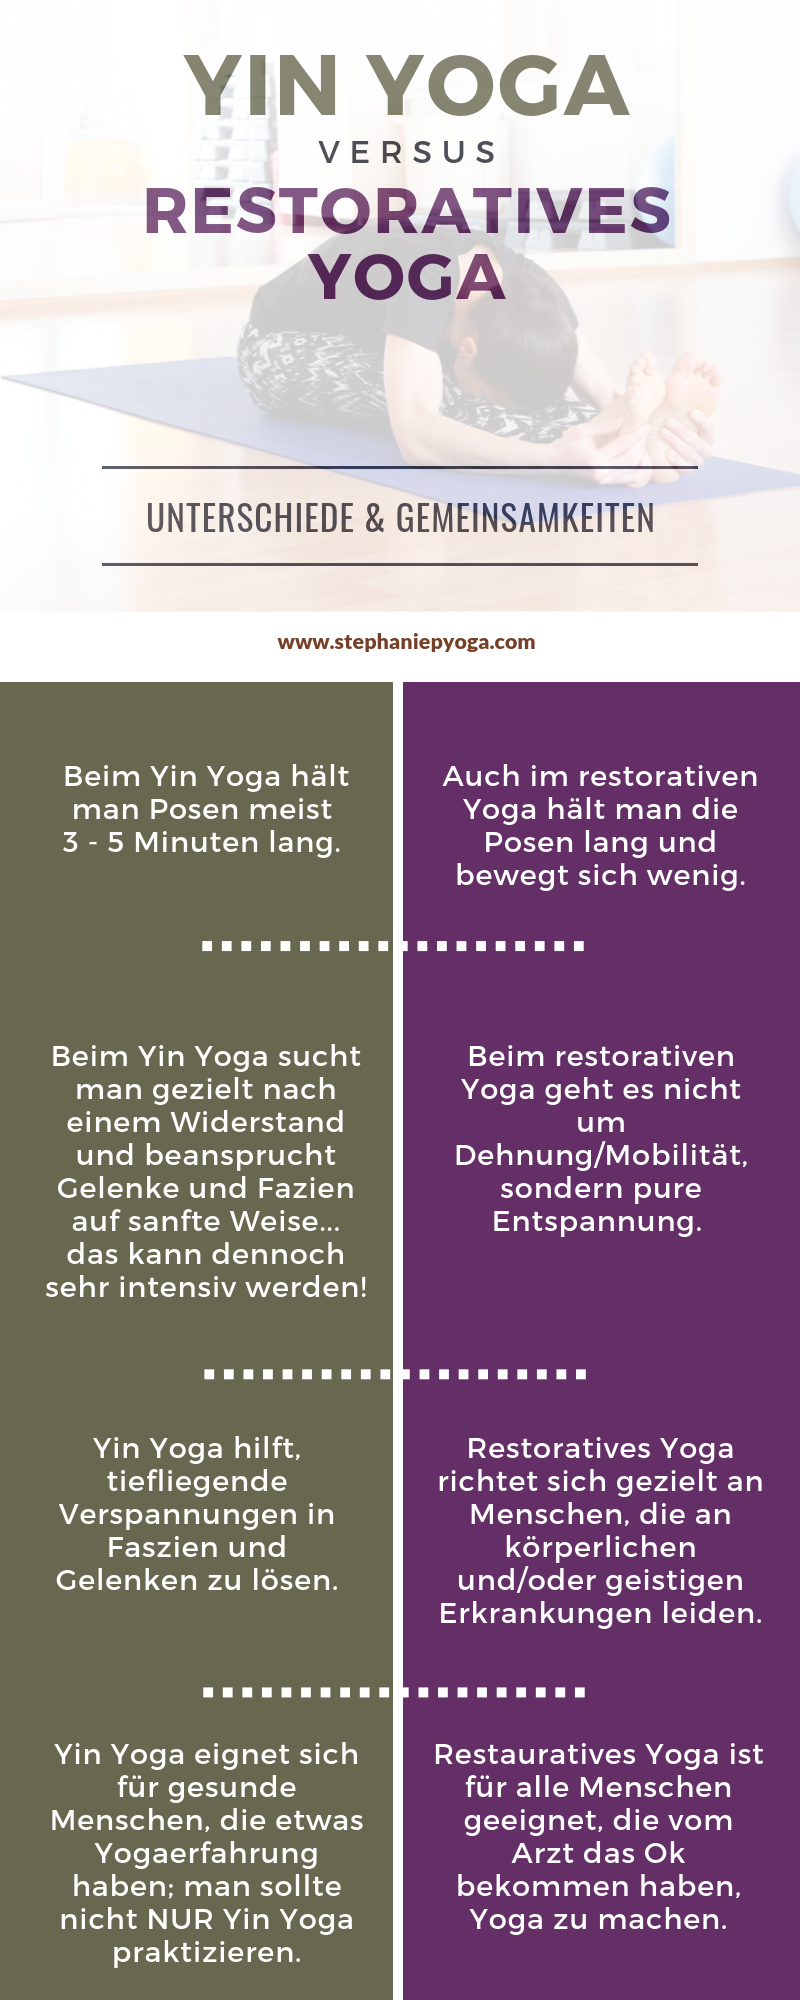 Yin Yoga vs. Restoratives Yoga: Unterschiede und Gemeinsamkeiten